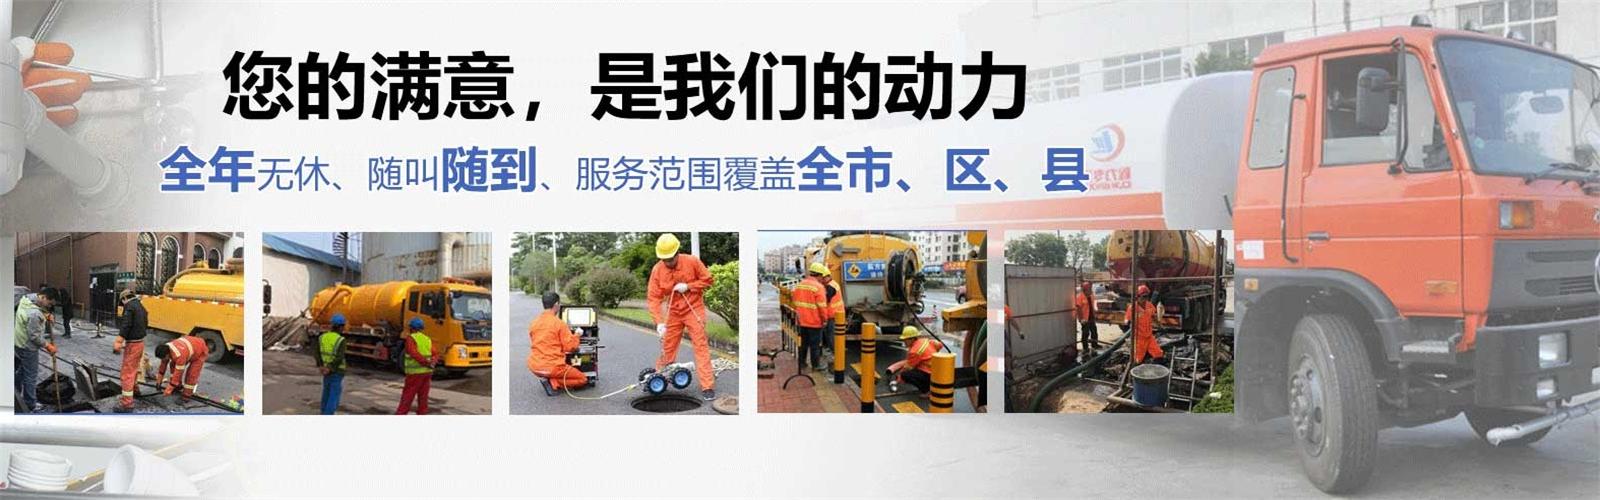 龙川县疏通清洗下水道